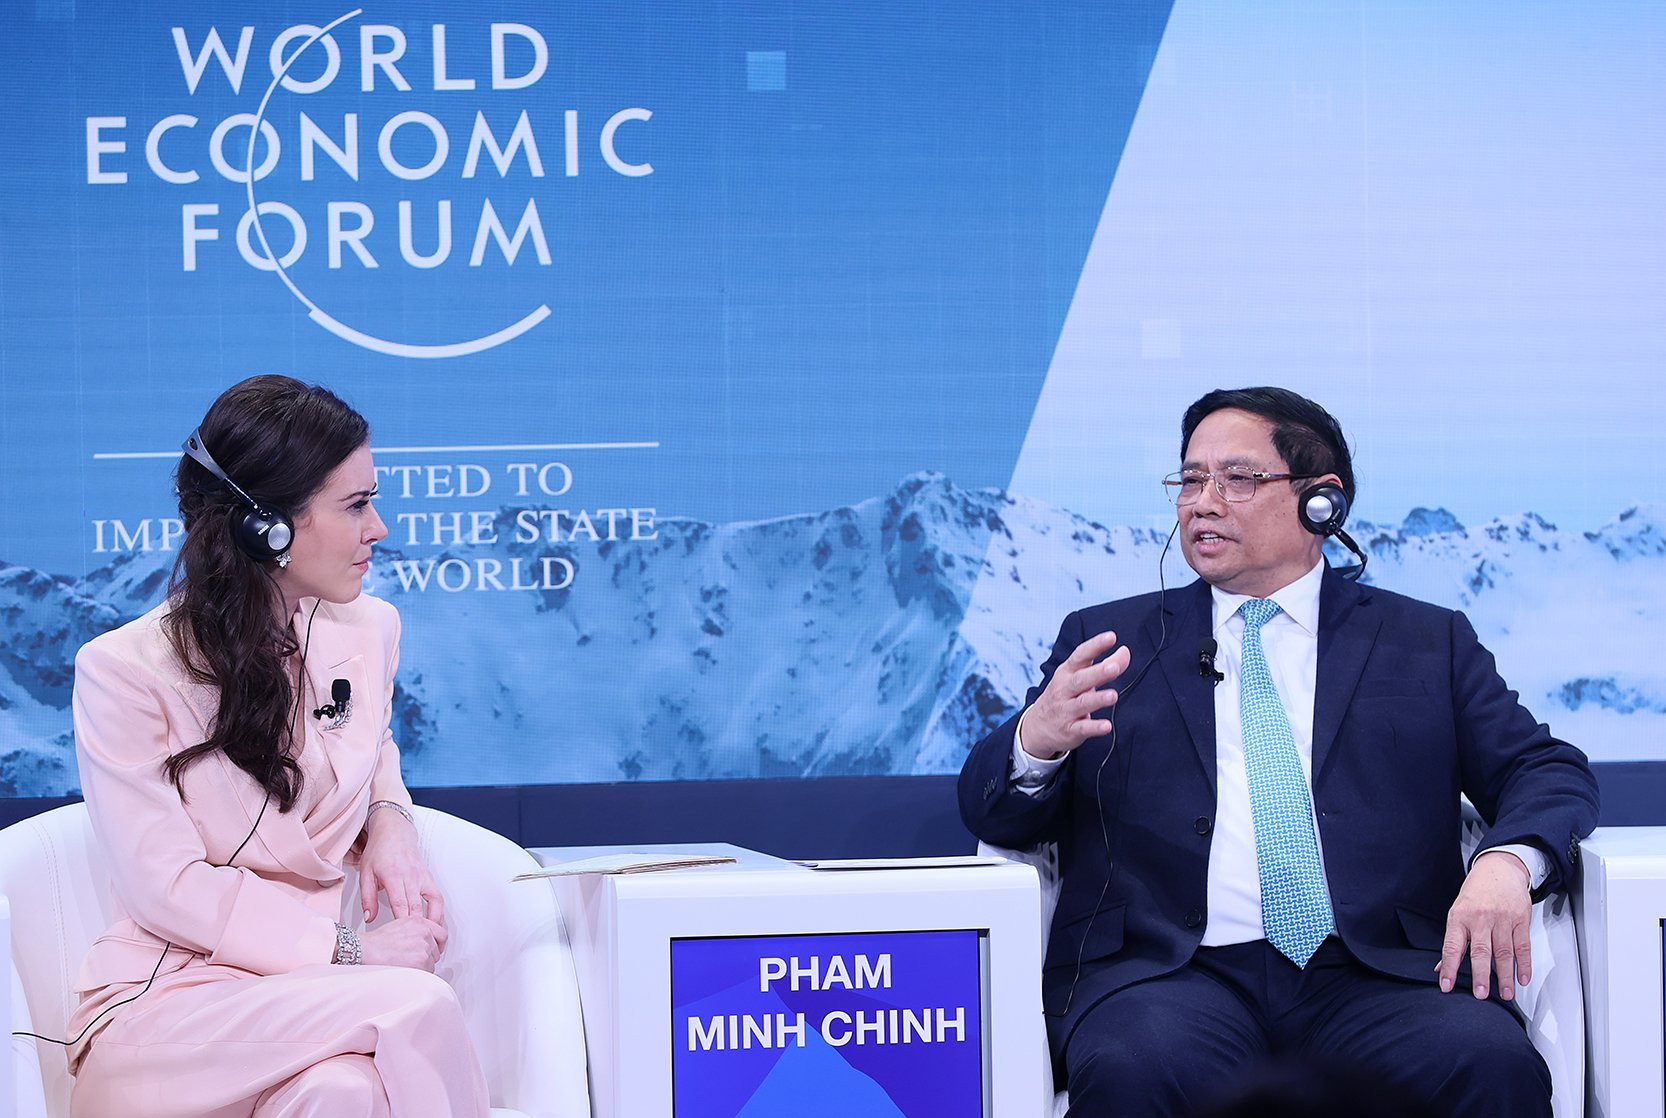 Thủ tướng Phạm Minh Chính tham dự và phát biểu với tư cách diễn giả chính tại phiên thảo luận "Bài học từ ASEAN" trong khuôn khổ Hội nghị WEF Davos năm 2024 - Ảnh: VGP/Nhật Bắc

